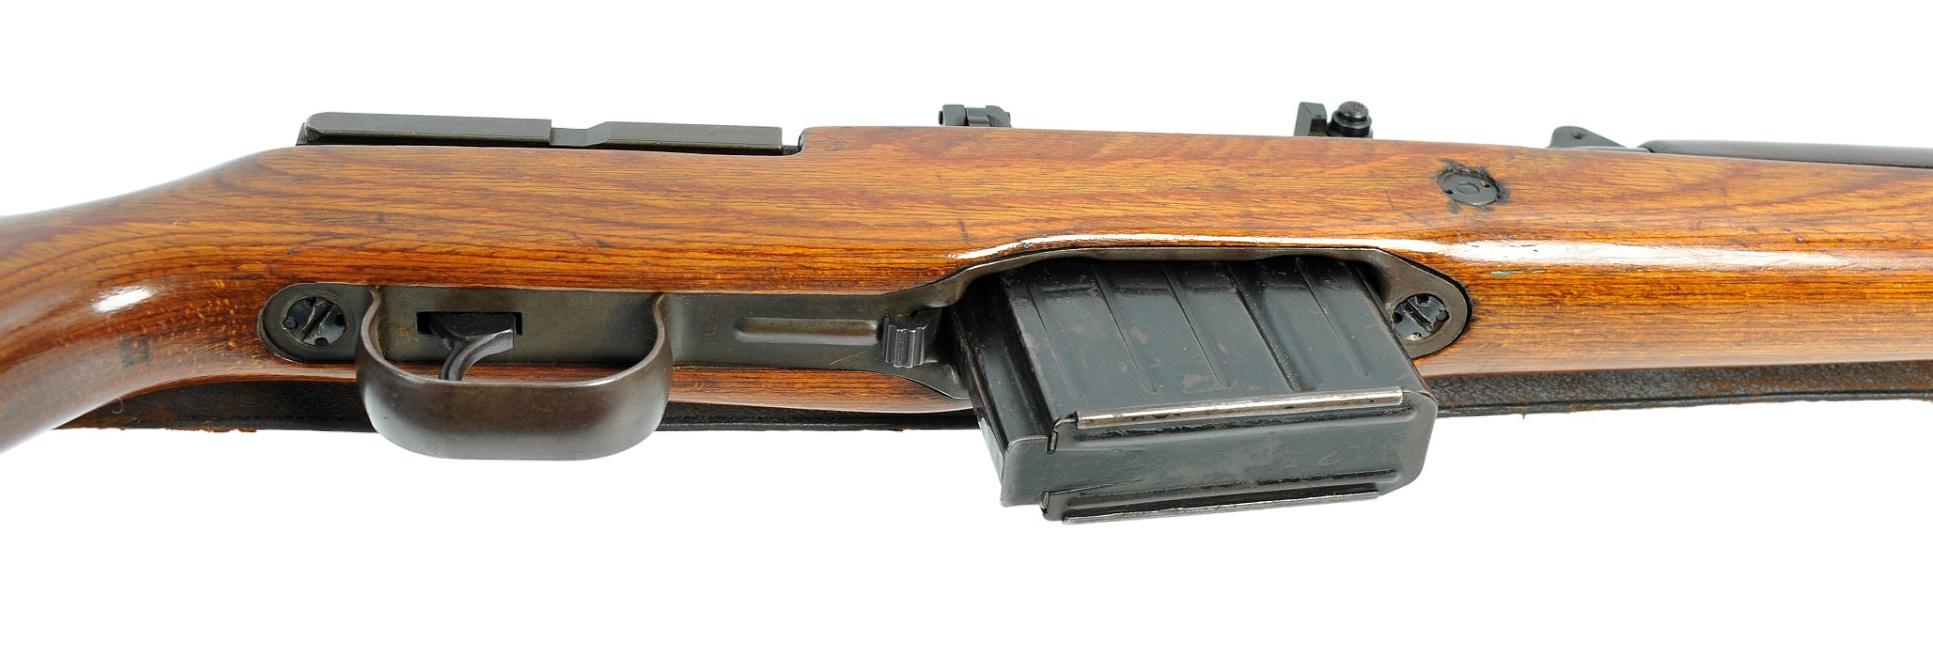 German Military WWII era G/K-43 8mm Semi-Automatic Rifle - FFL # 9658J (OWM1)